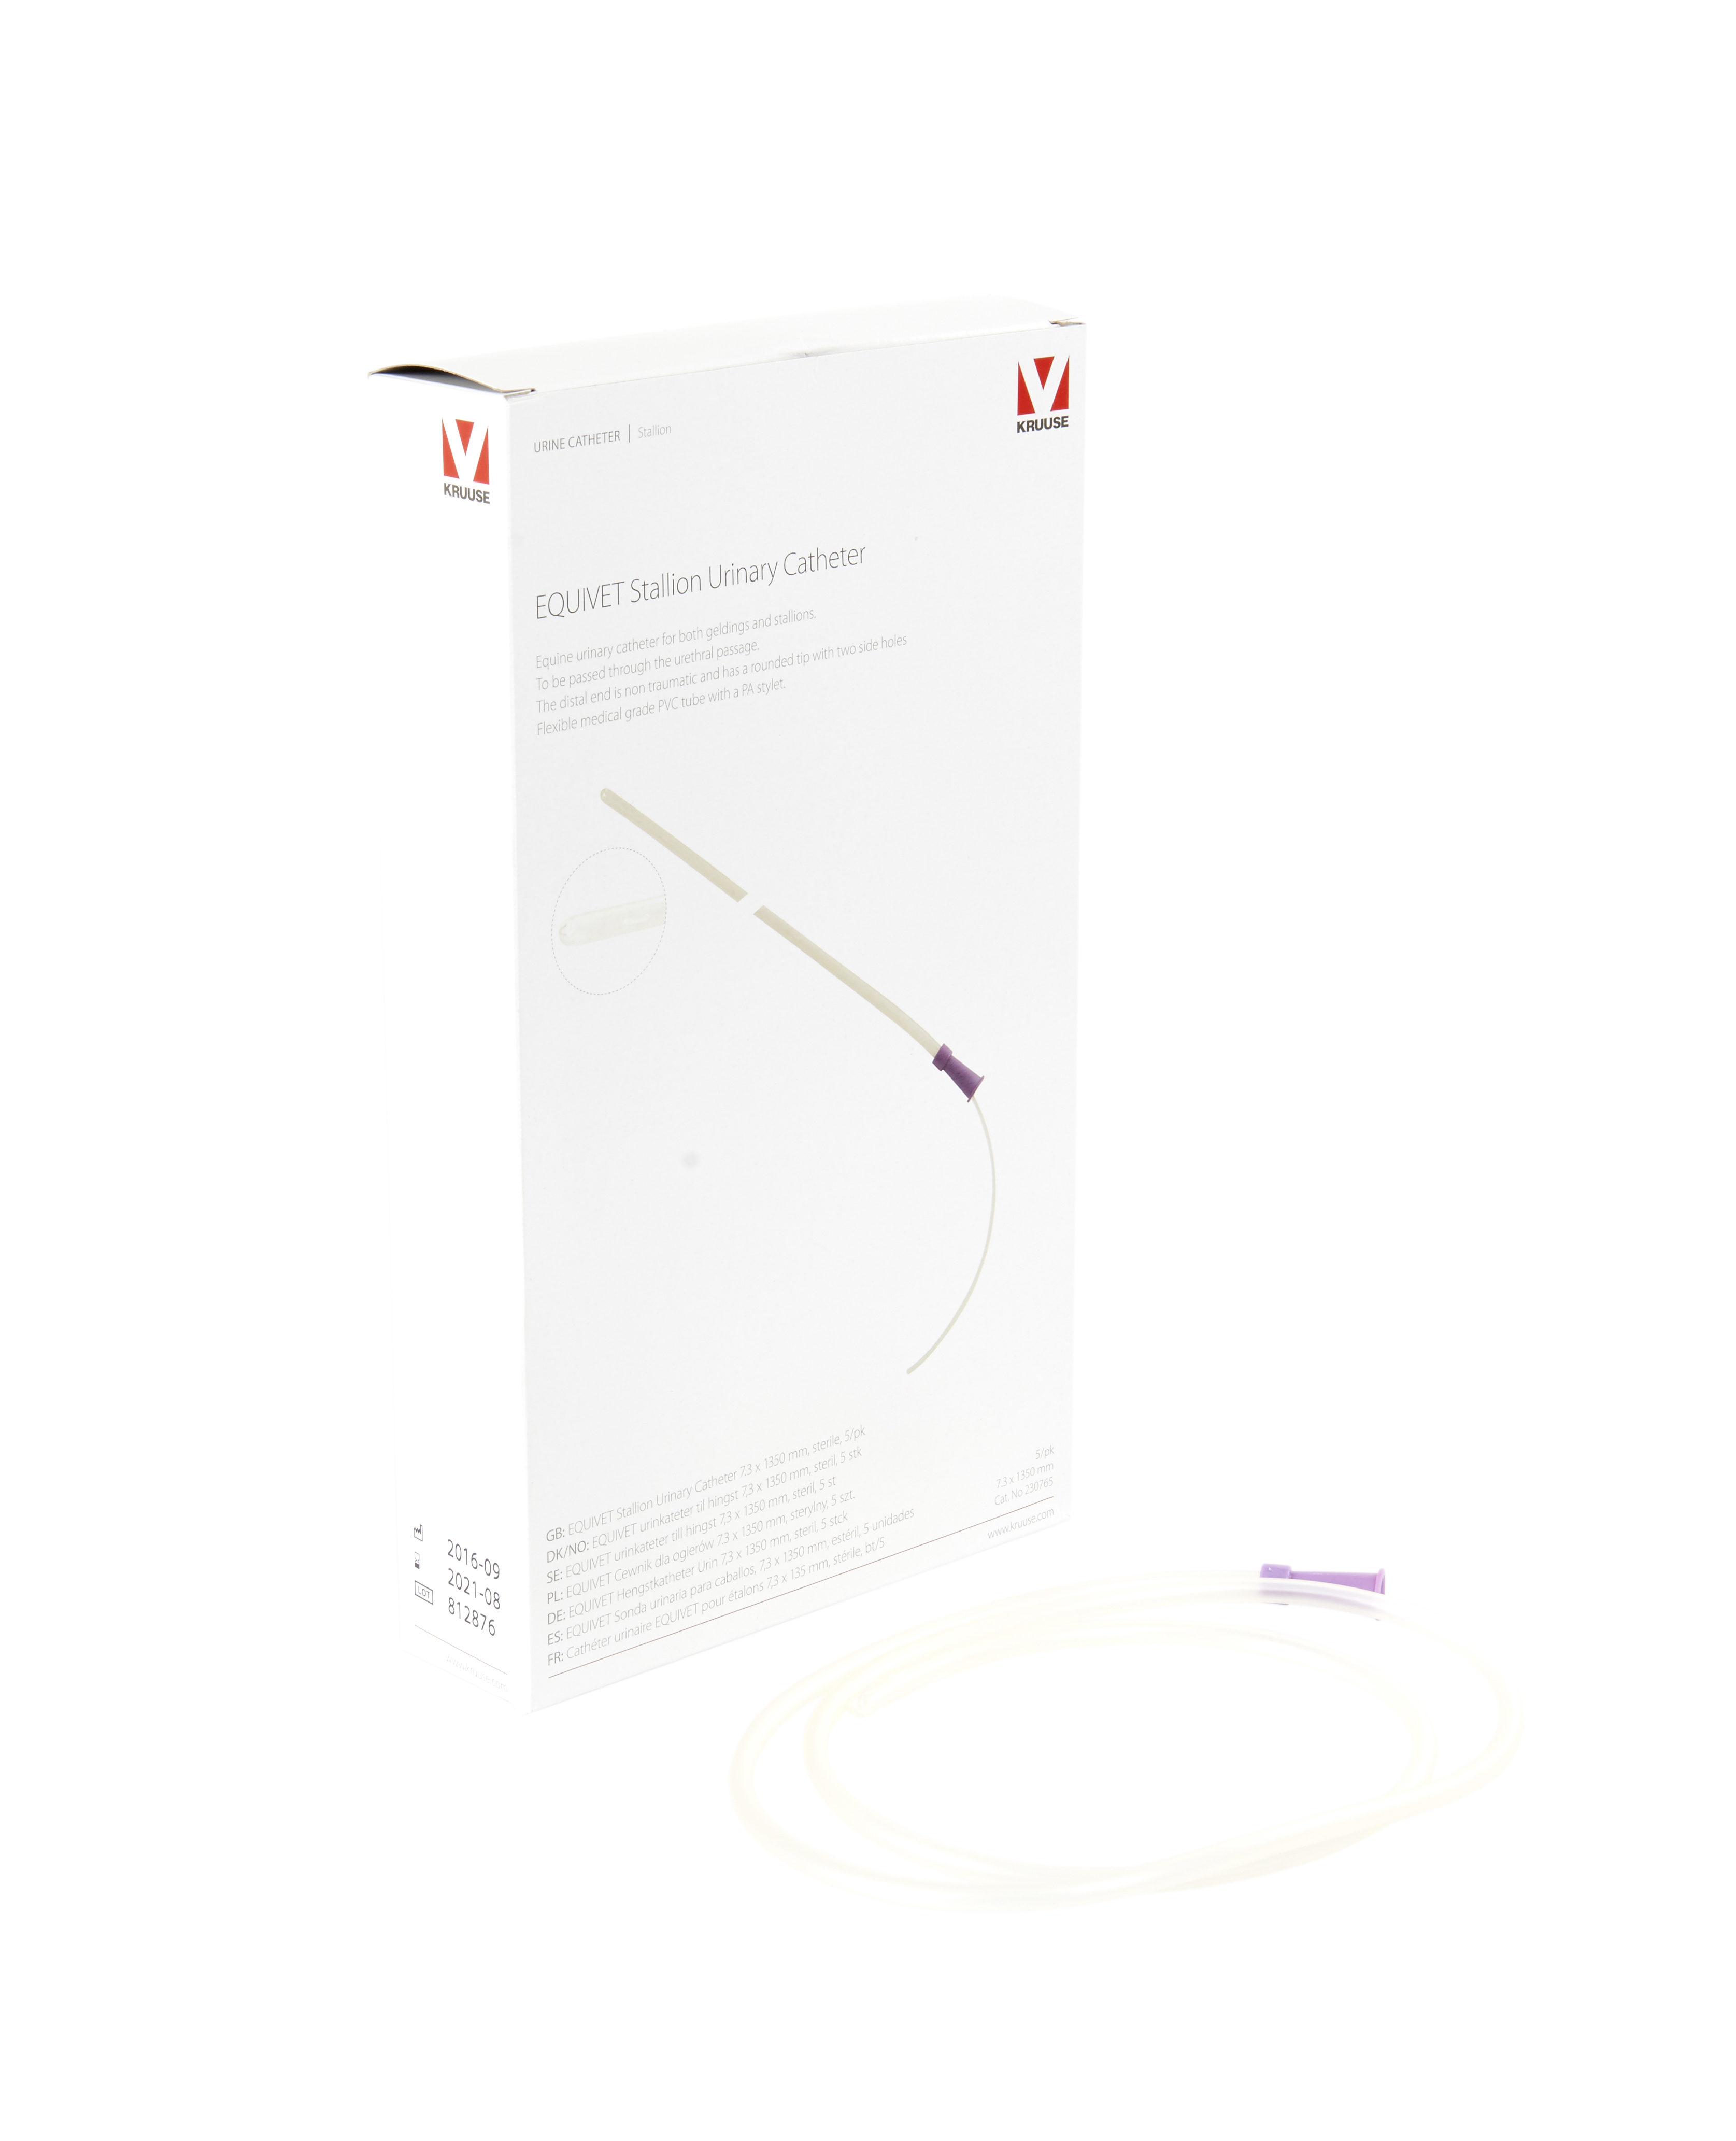 EQUIVET Stallion Urinary Catheter 7.3 x 1350 mm, sterile, 5/pk